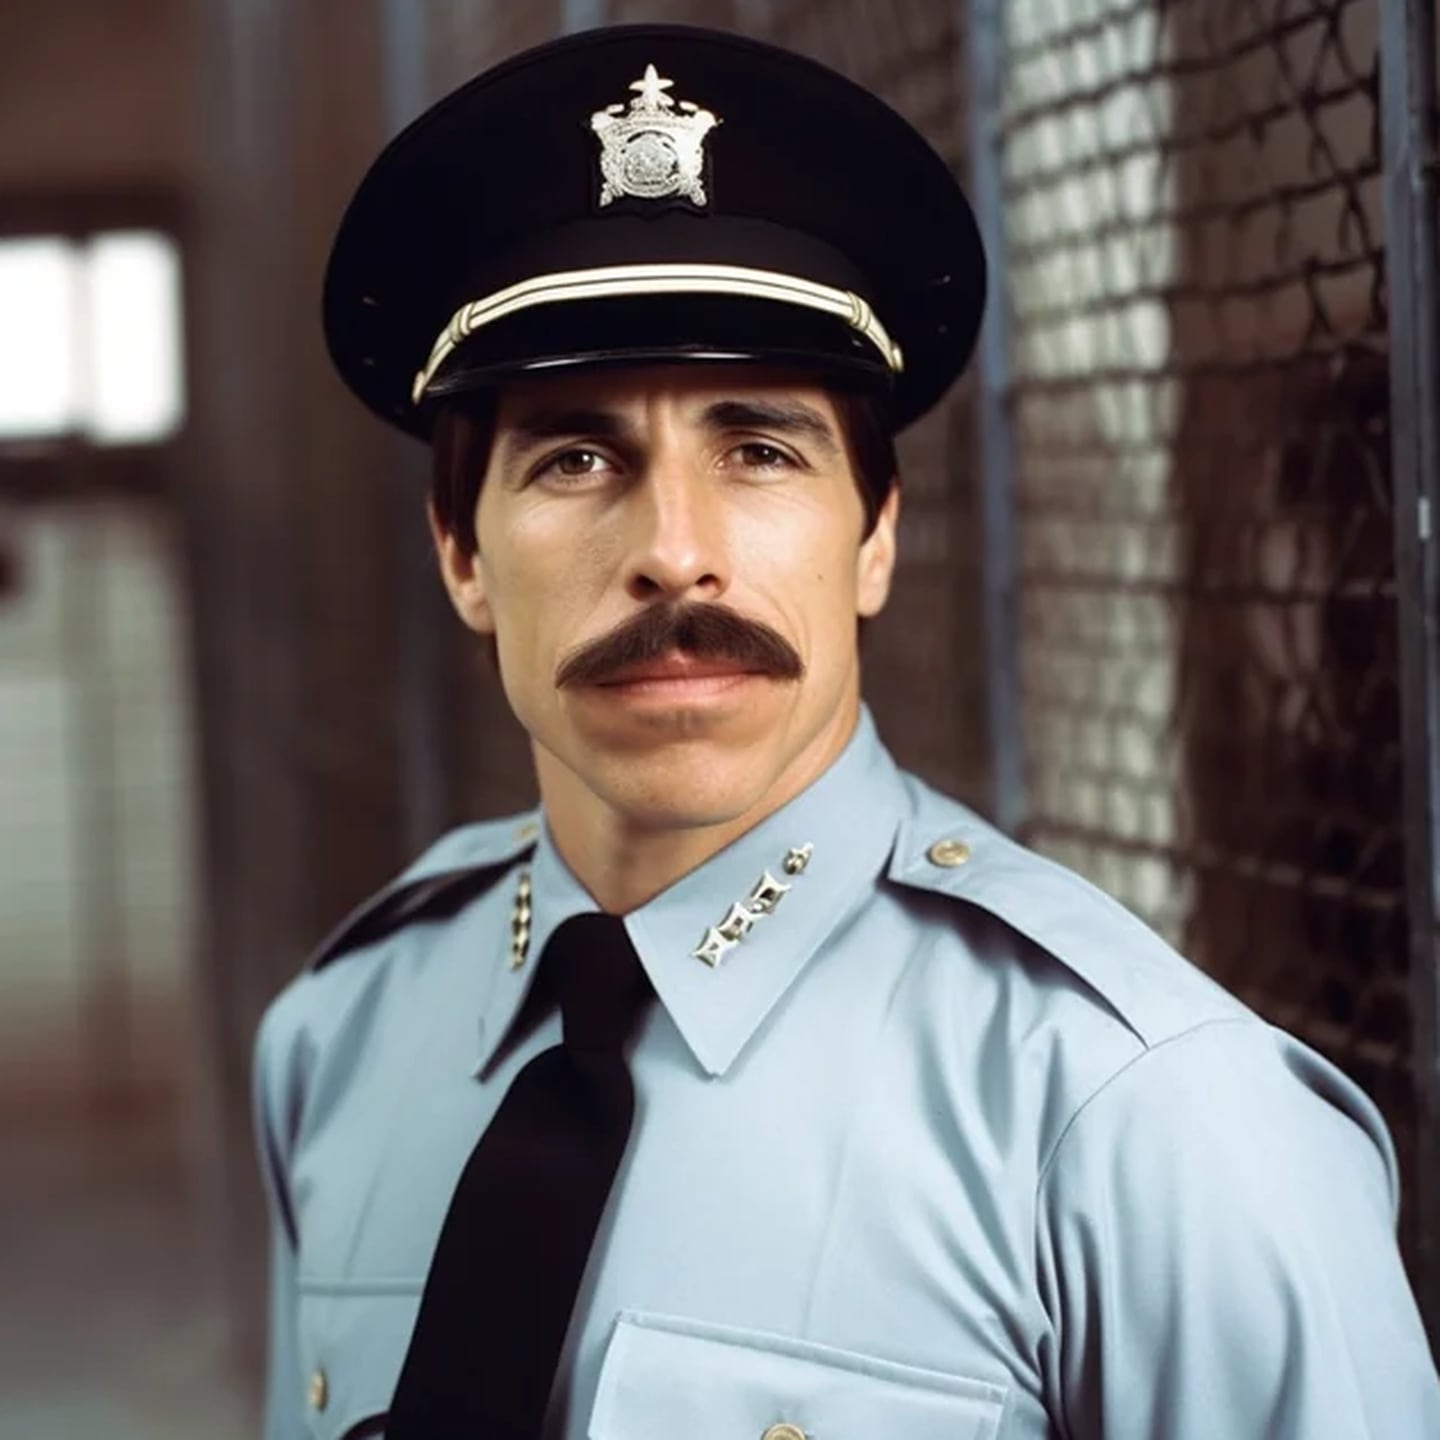 Anthony Kiedis (líder y vocalista de Red Hot Chilli Peppers), como Guardia de prisión